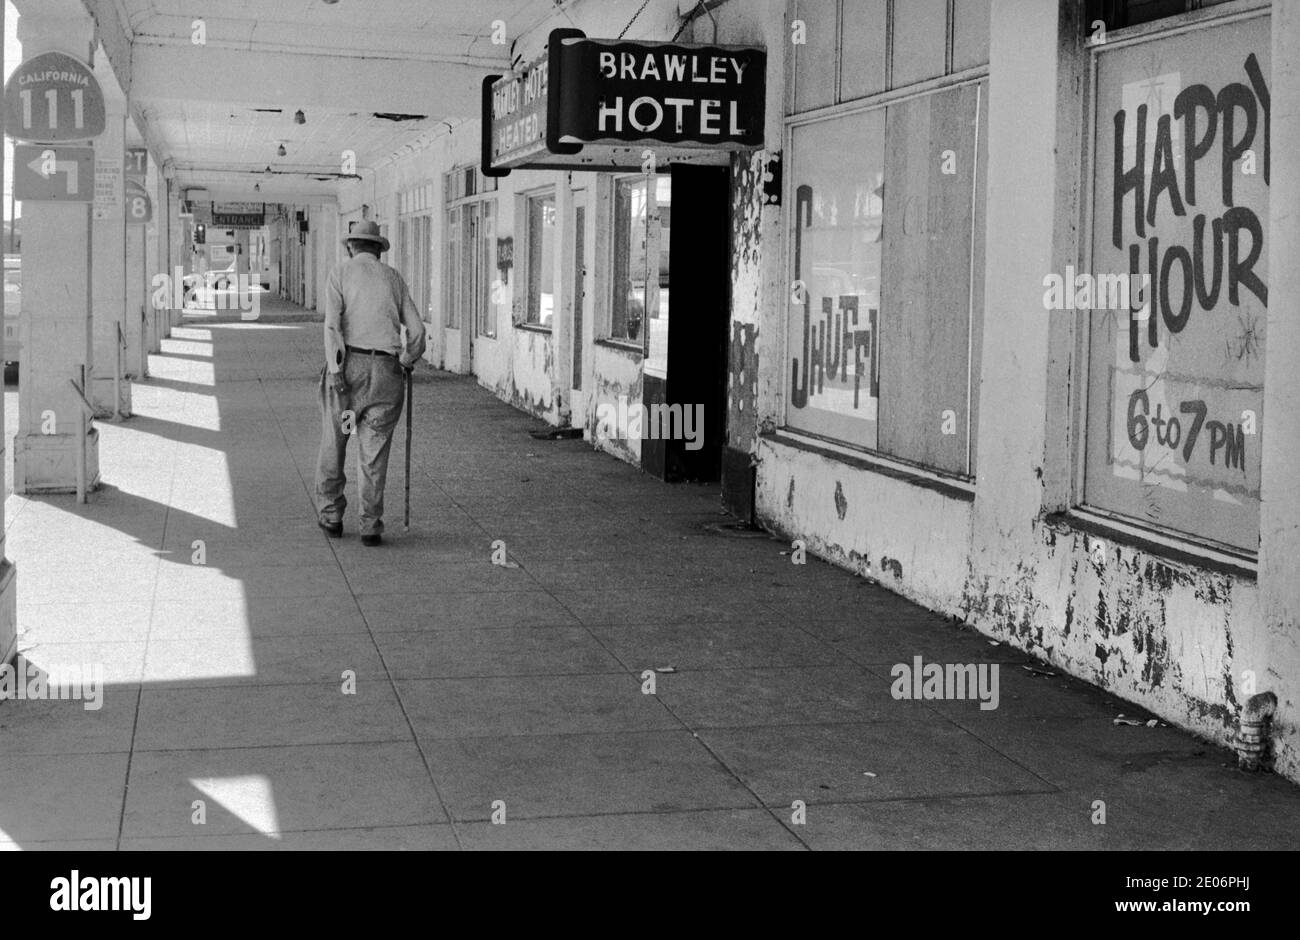 Senior Mann kratzt seine unteren städtischen Armut außerhalb der billigen und heruntergekommenen Brawley Hotel Werbung Happy Hour, Brawley, New Mexico 1972 1970er USA HOMER SYKES Stockfoto